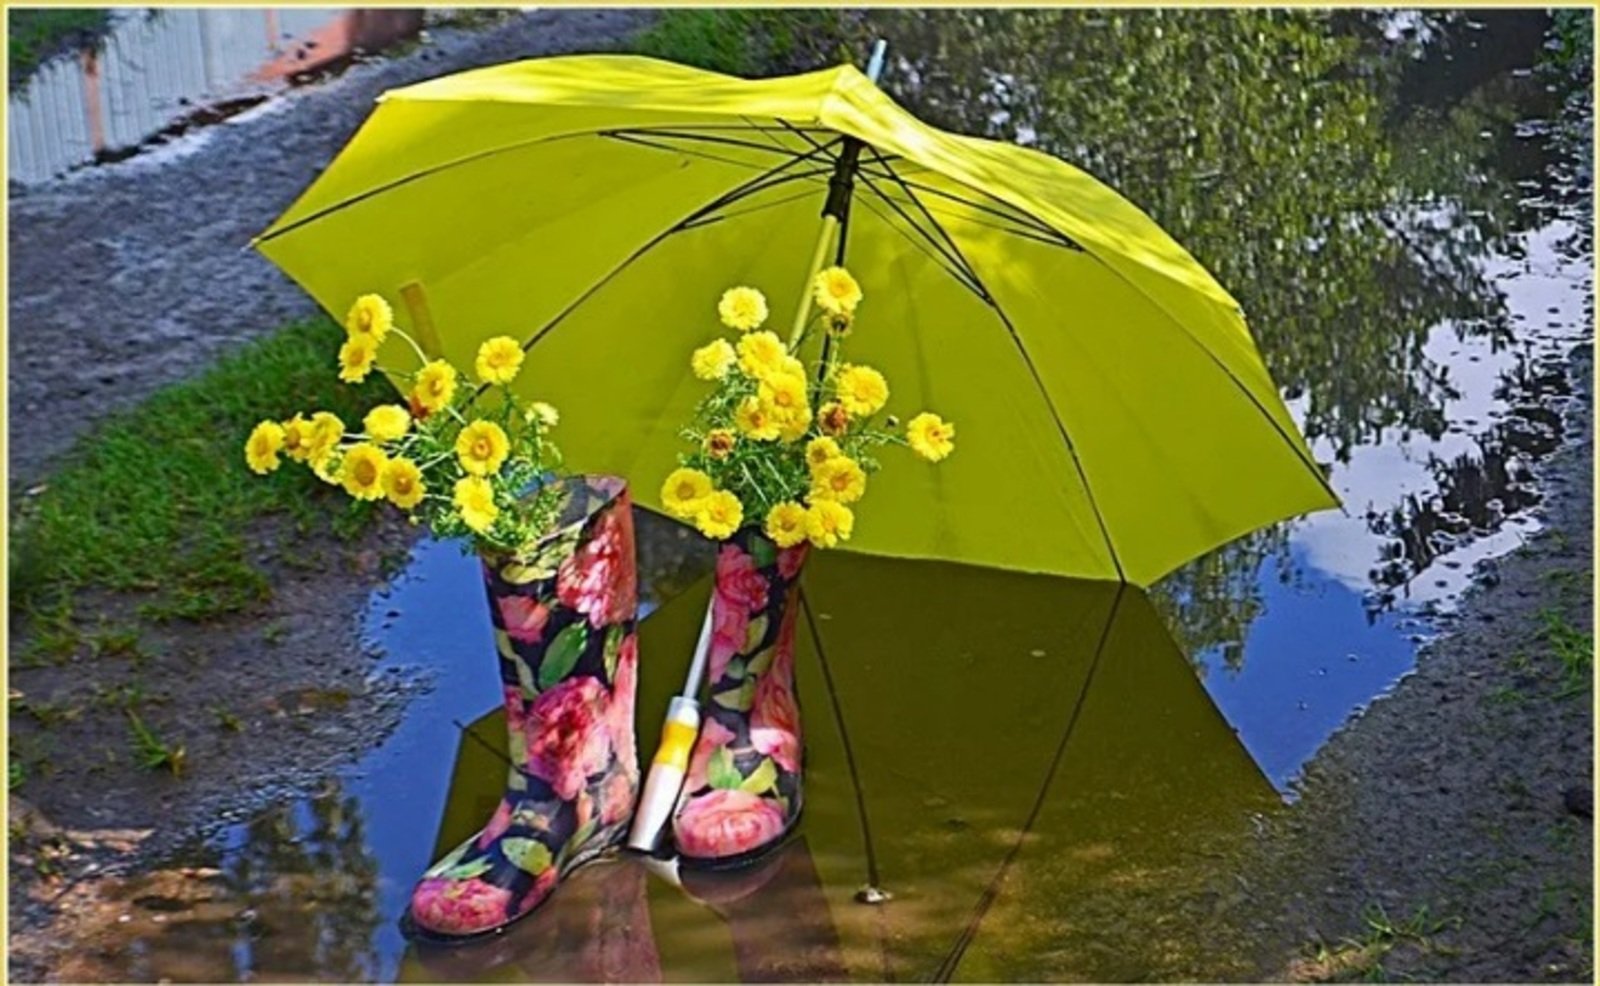 Одолжил ей зонтик. Летний зонтик. Красивые зонтики. Растение зонтик. Цветы в зонтике.